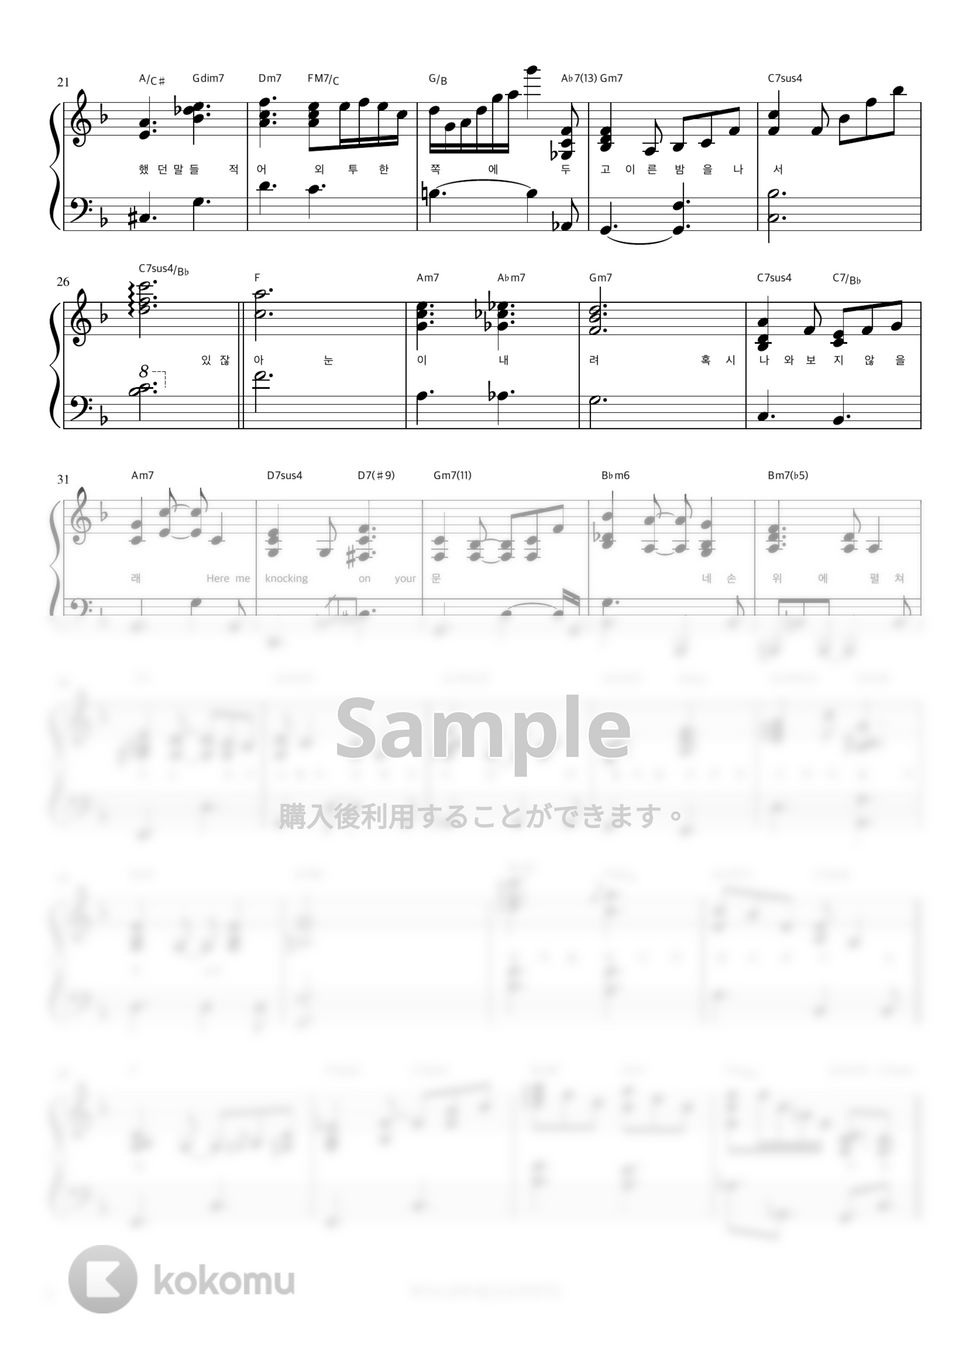 NCT DREAM - Moon (伴奏楽譜) by 피아노정류장